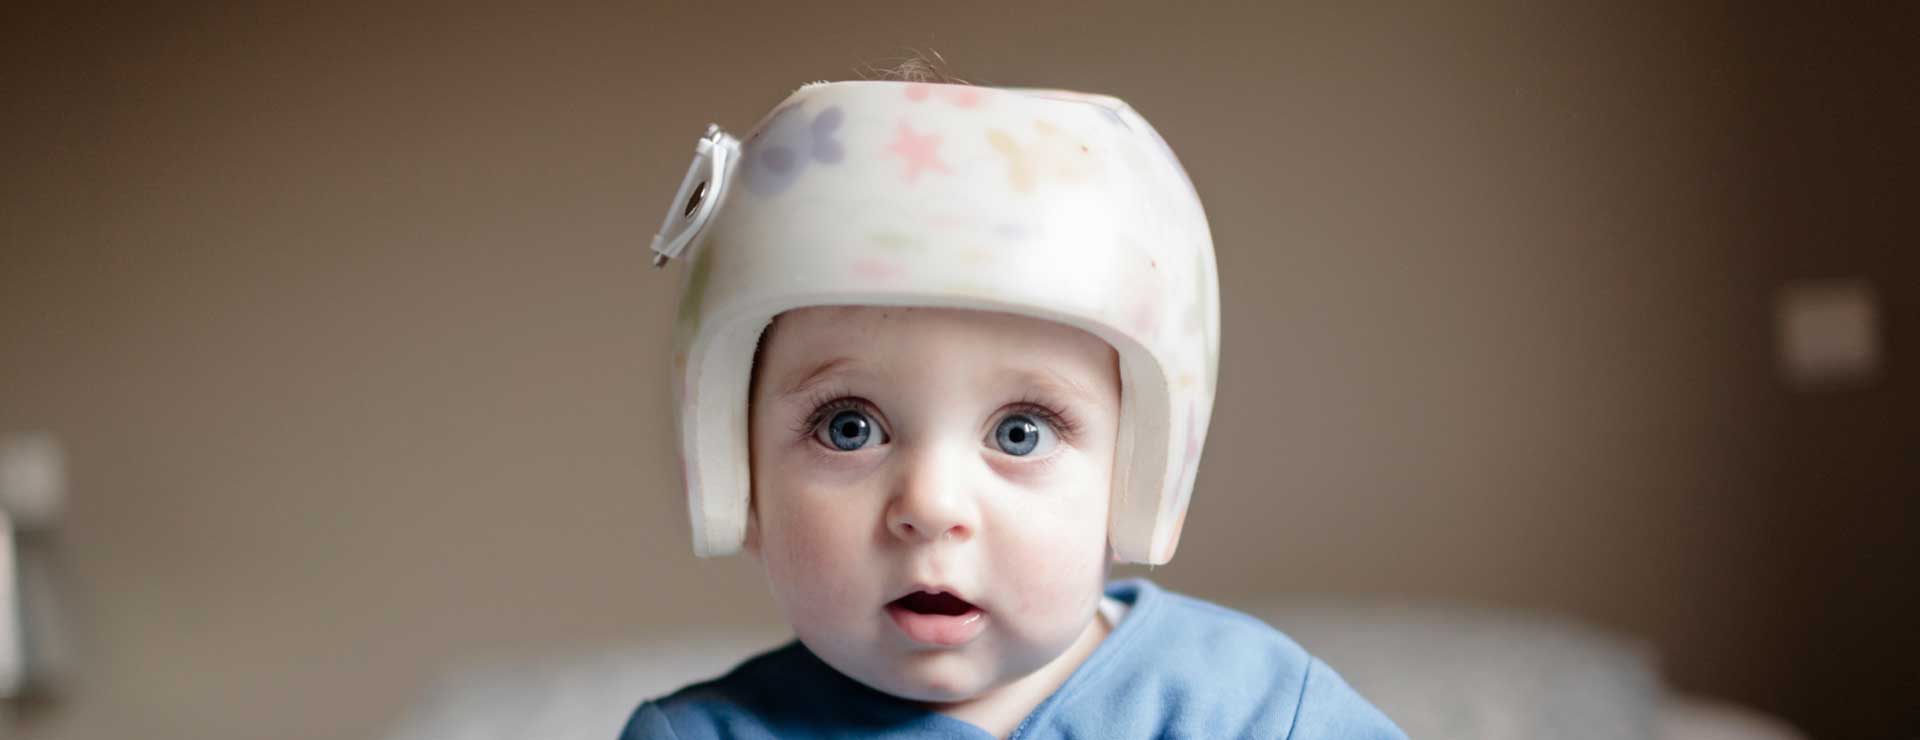 helmet for baby boy